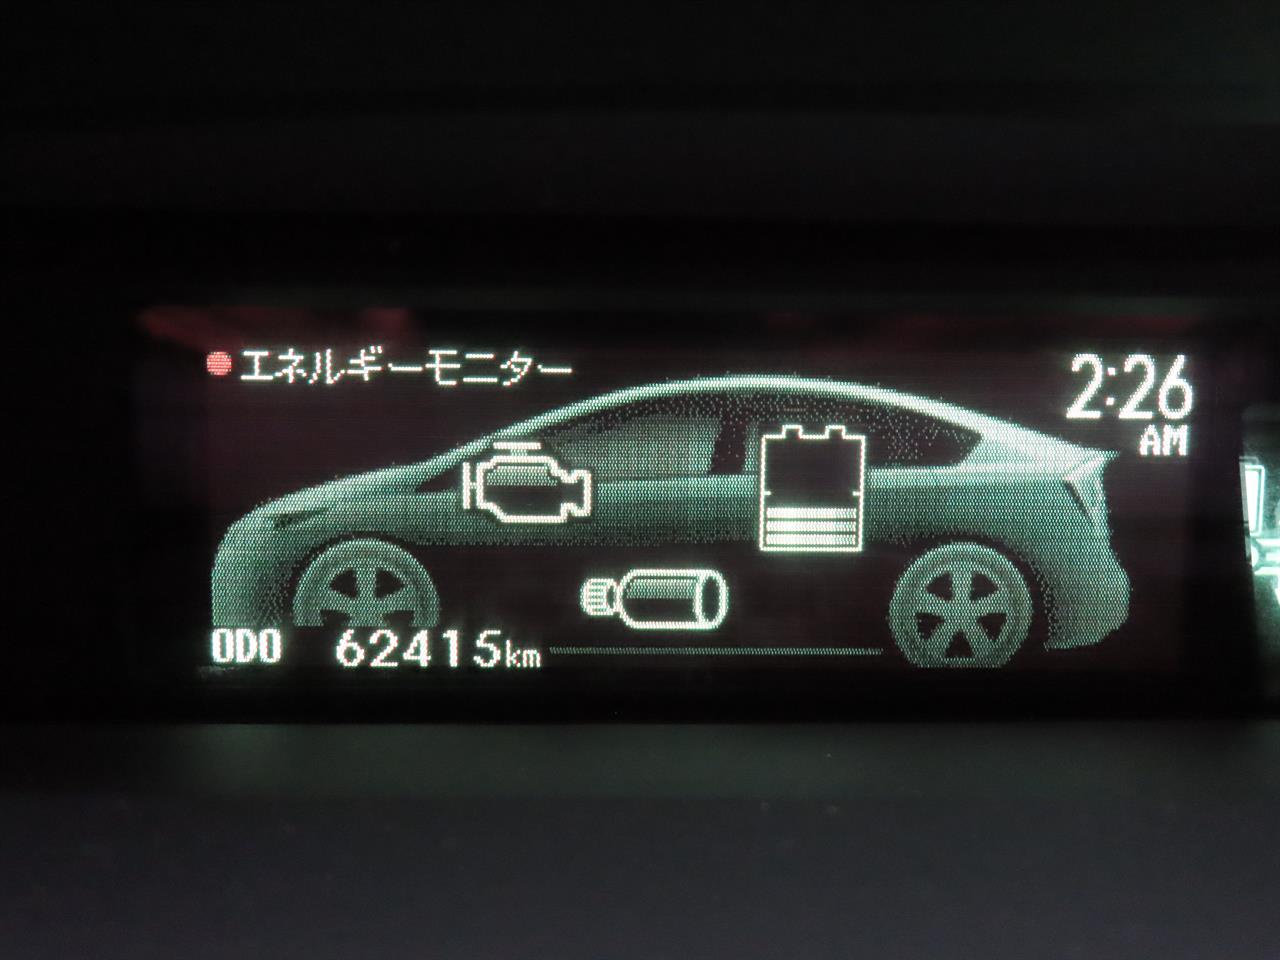 2015 Toyota Prius